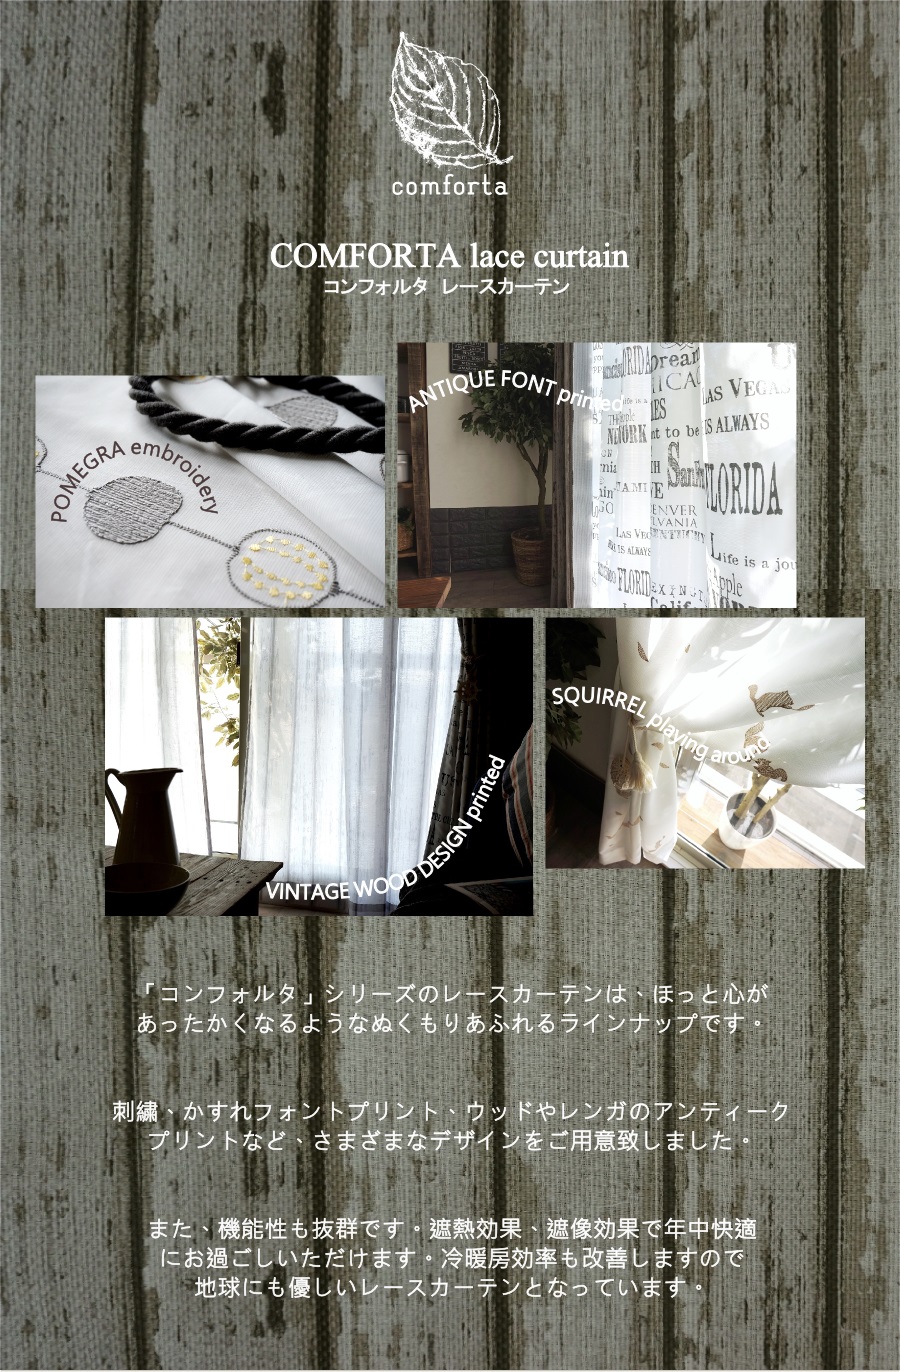 conforta-lace-3